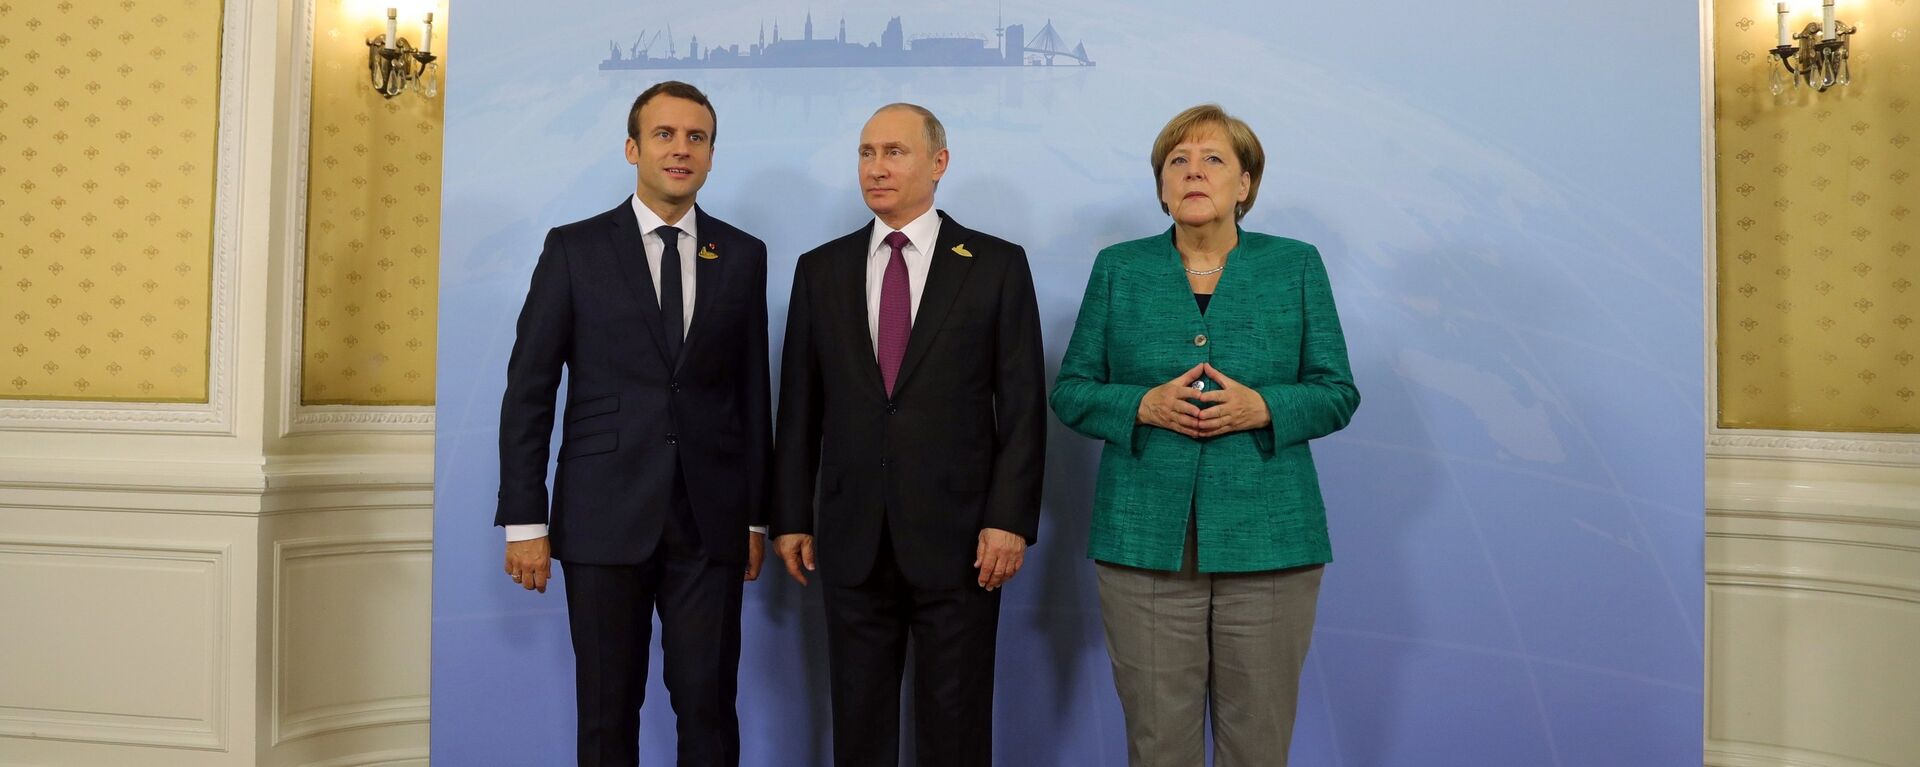 Президент Франции Эммануэль Макрон, президент РФ Владимир Путин, канцлер Германии Ангела Меркель (слева направо), архивное фото - Sputnik Latvija, 1920, 02.04.2021